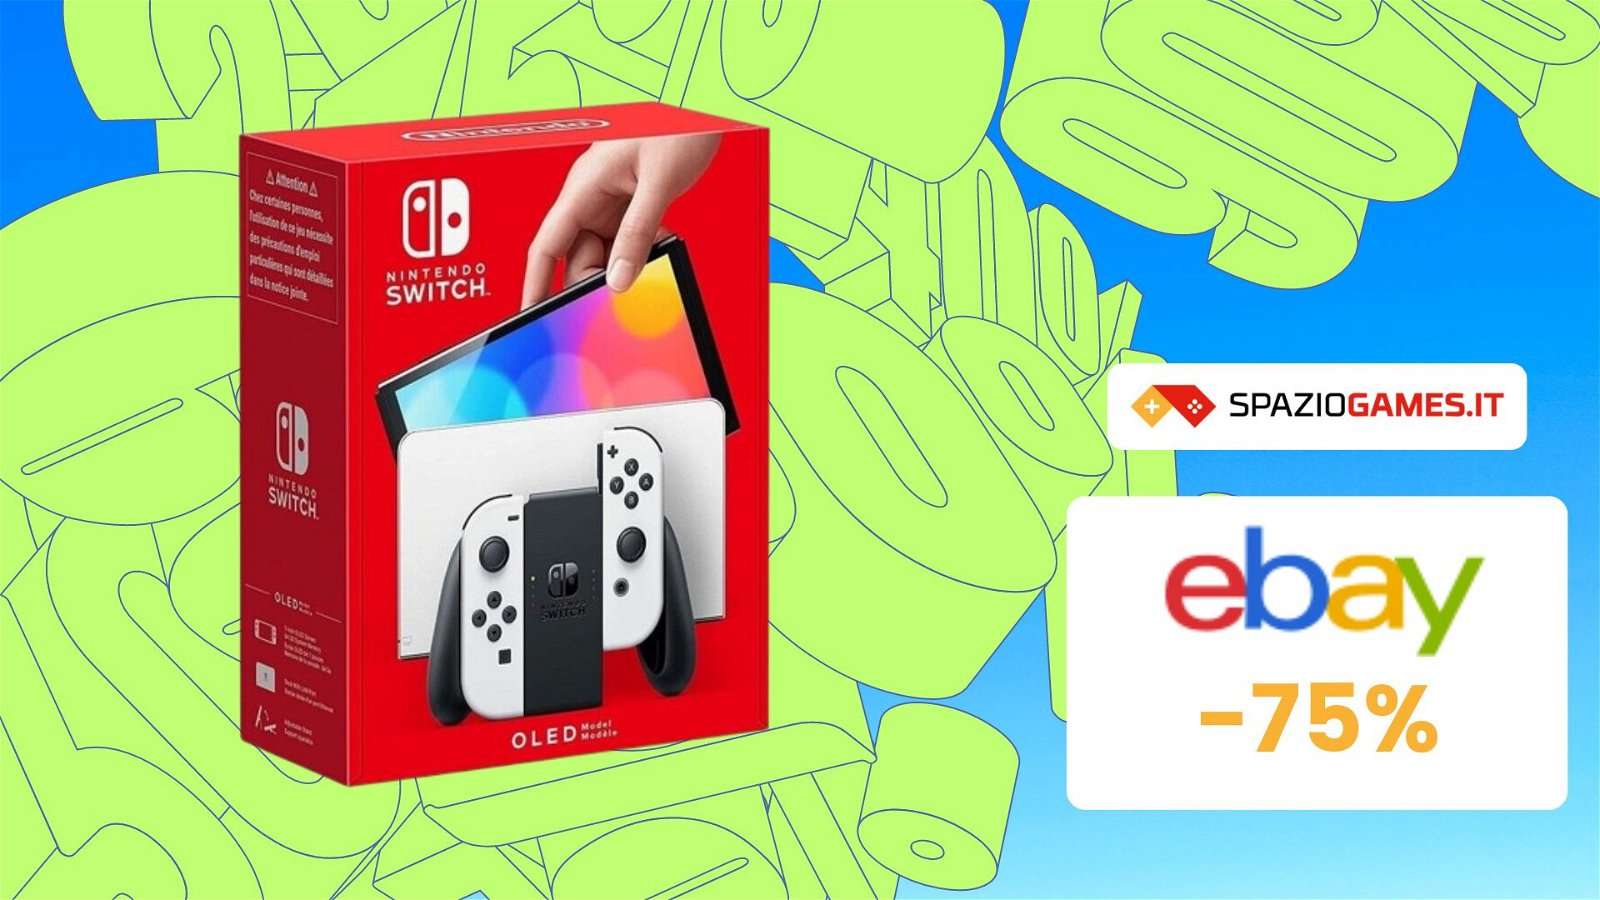 Nintendo Switch OLED in OFFERTA: acquistala ora a SOLI 275€ con questo COUPON